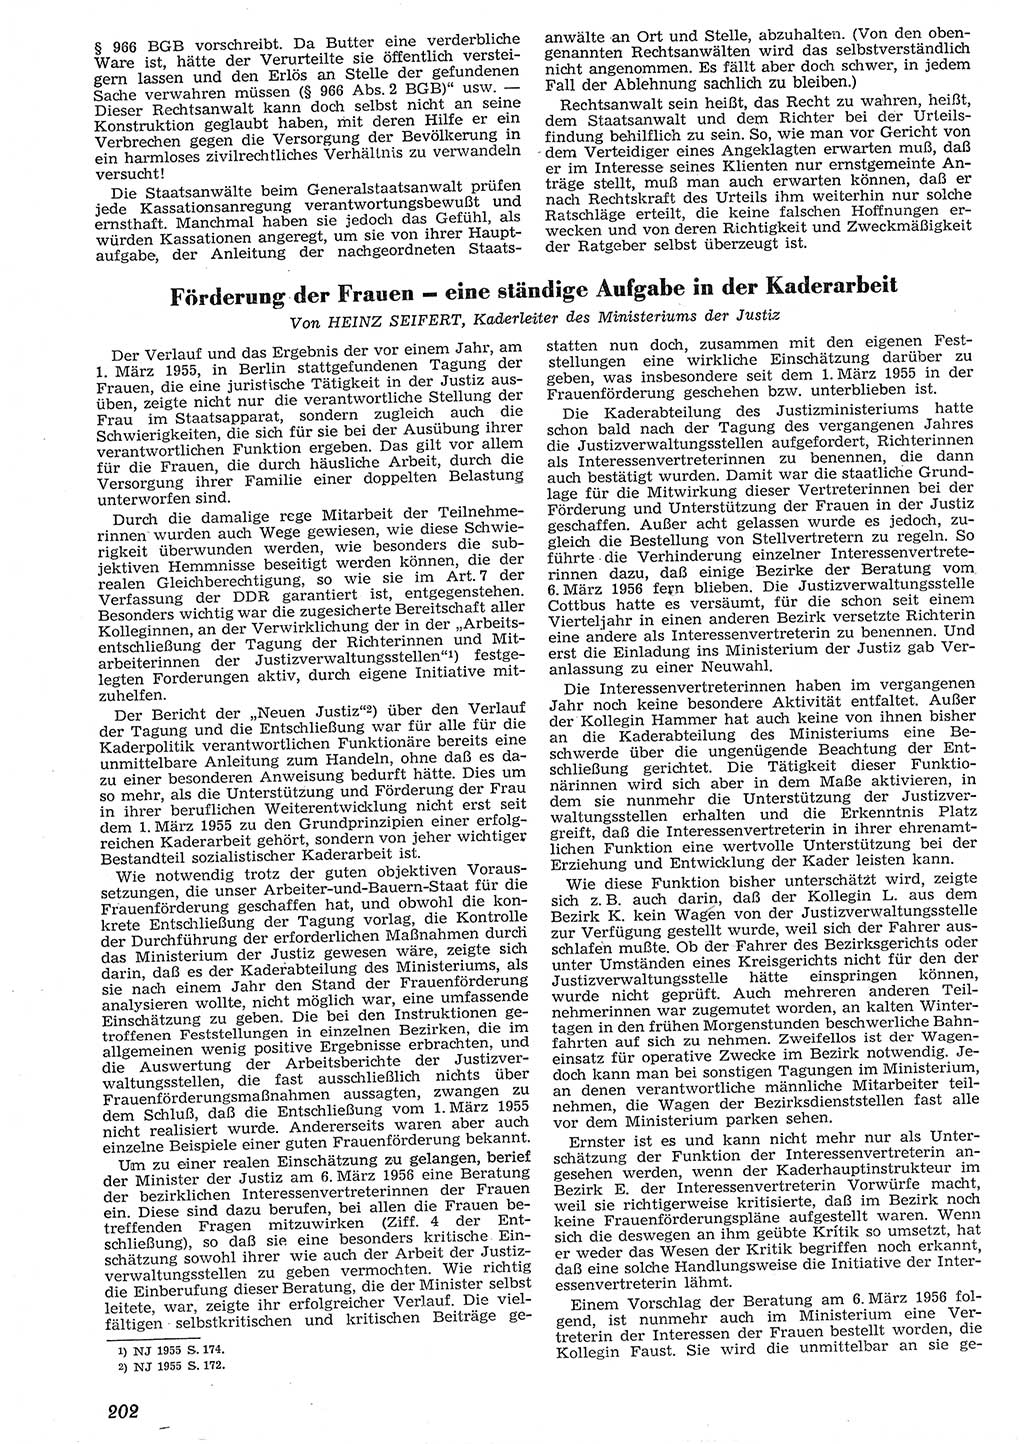 Neue Justiz (NJ), Zeitschrift für Recht und Rechtswissenschaft [Deutsche Demokratische Republik (DDR)], 10. Jahrgang 1956, Seite 202 (NJ DDR 1956, S. 202)